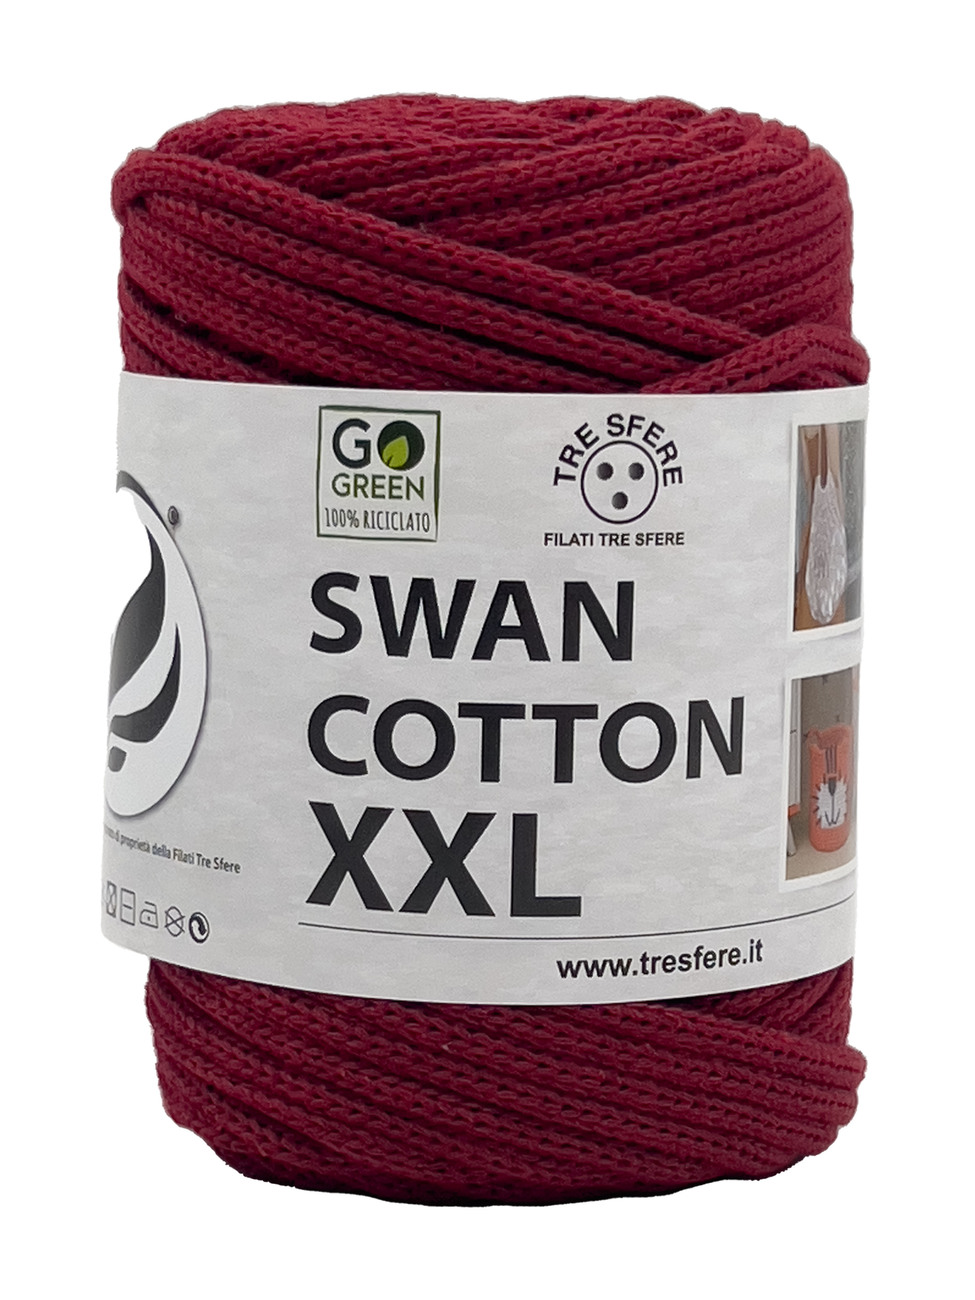 CORDINO SWAN COTTON XXL 250 grammi - Rosso Borgogna